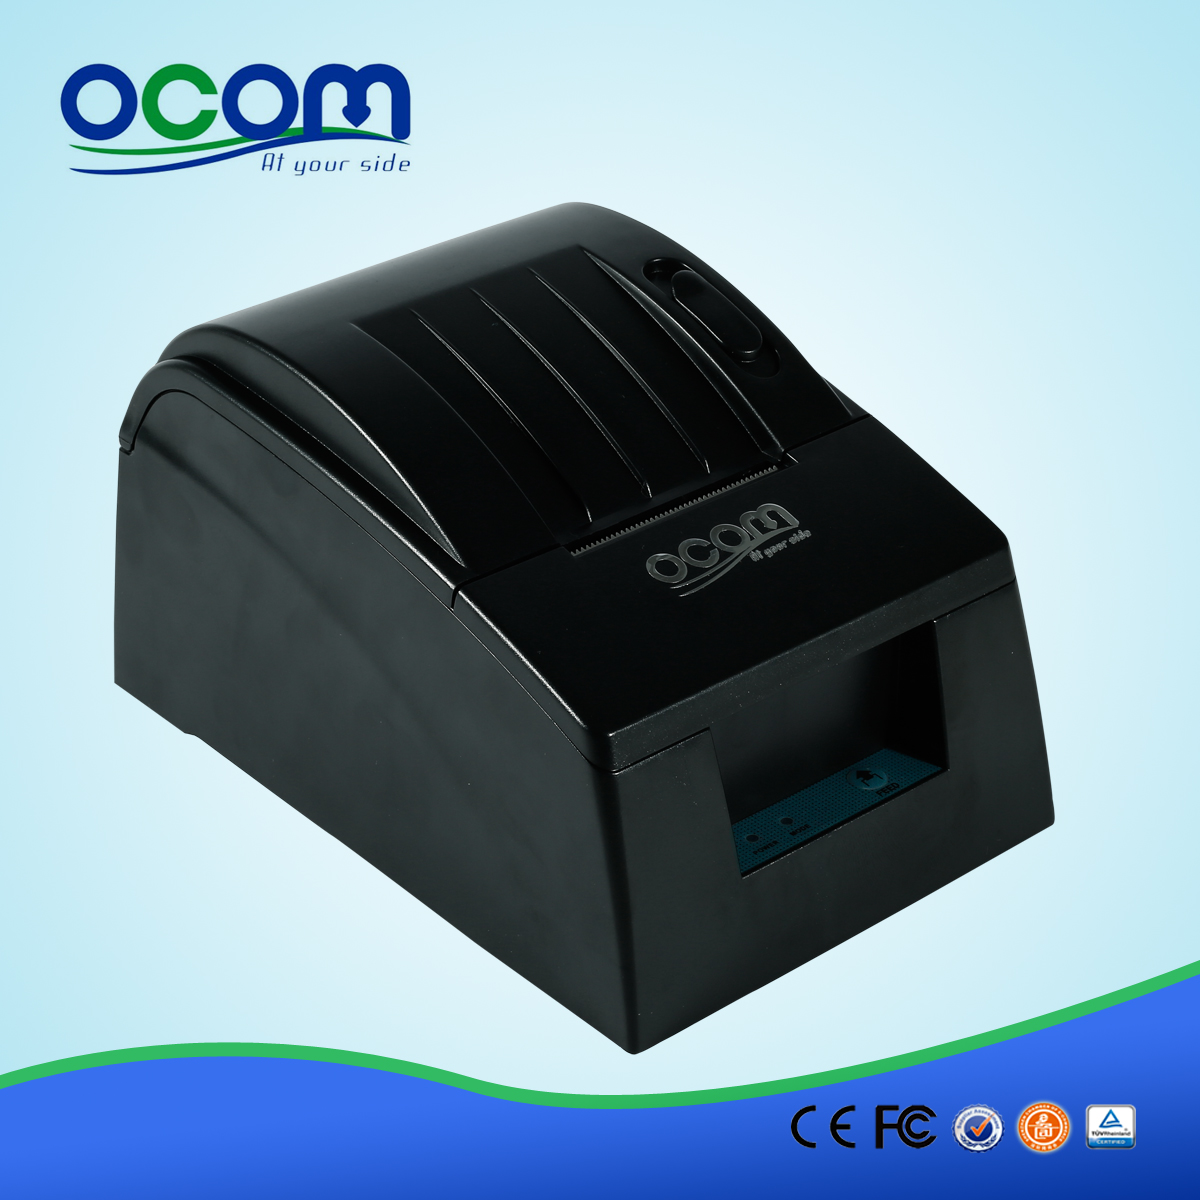 2 ιντσών OCPP-585 Pos Θερμική Παραλαβή εκτυπωτή